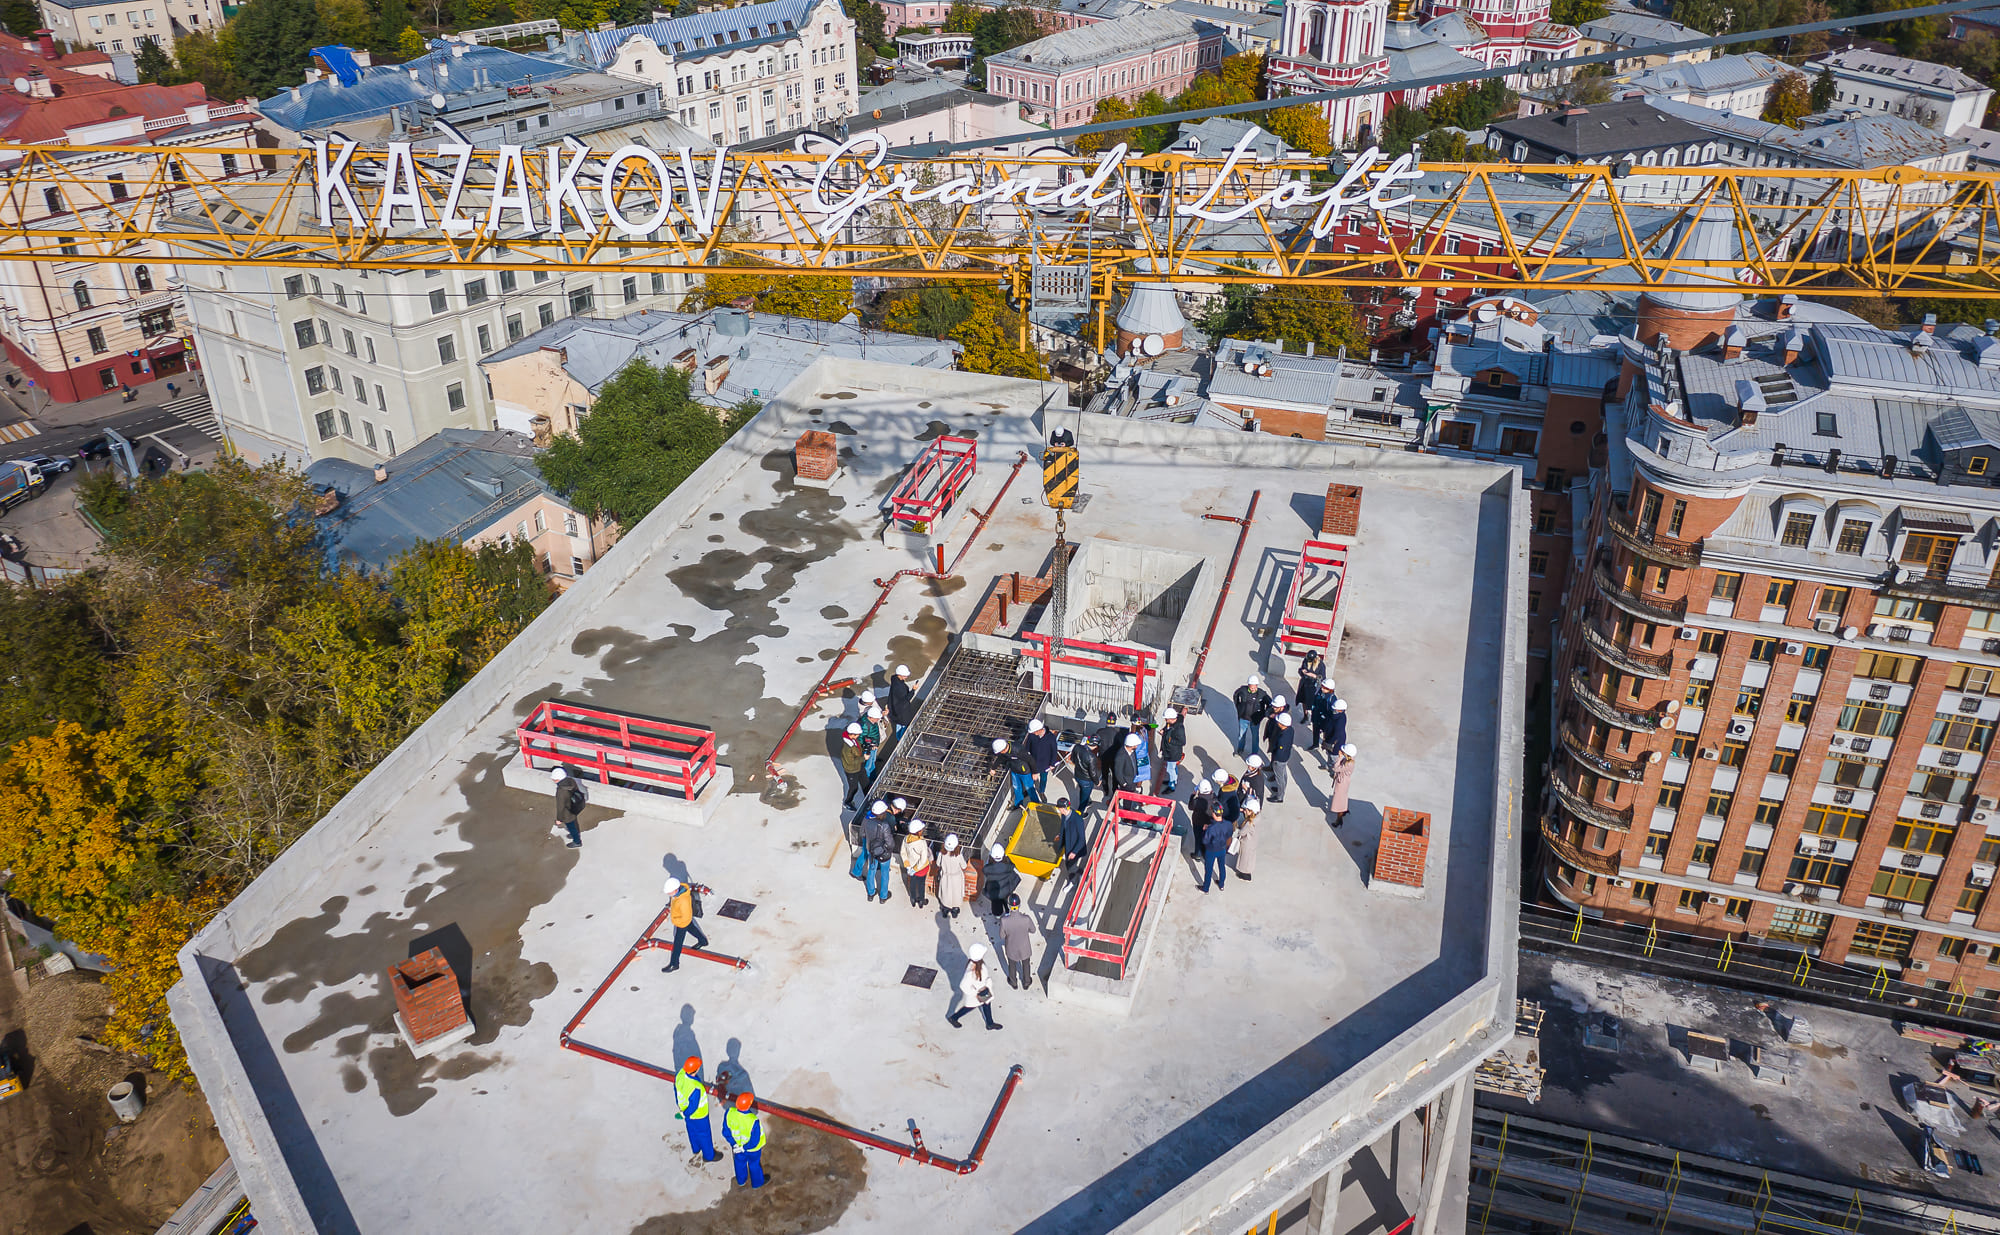 Последний куб бетона залит на строительстве комплекса Kazakov Grand Loft в центре Москвы